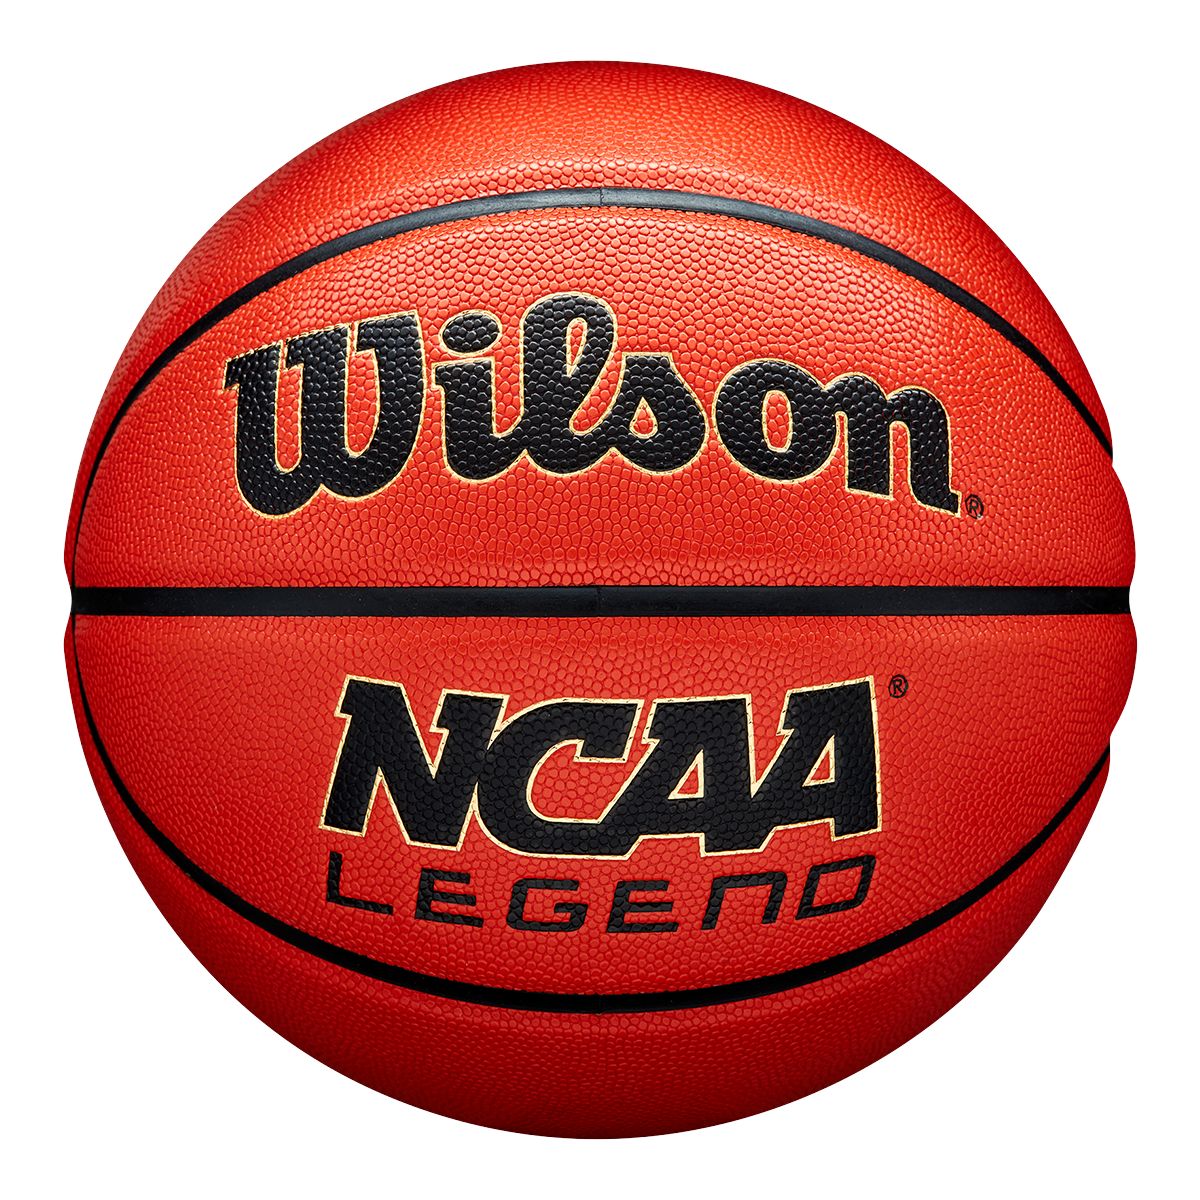 Wilson Ncaa Legends Basketball Indoor/Outdoor